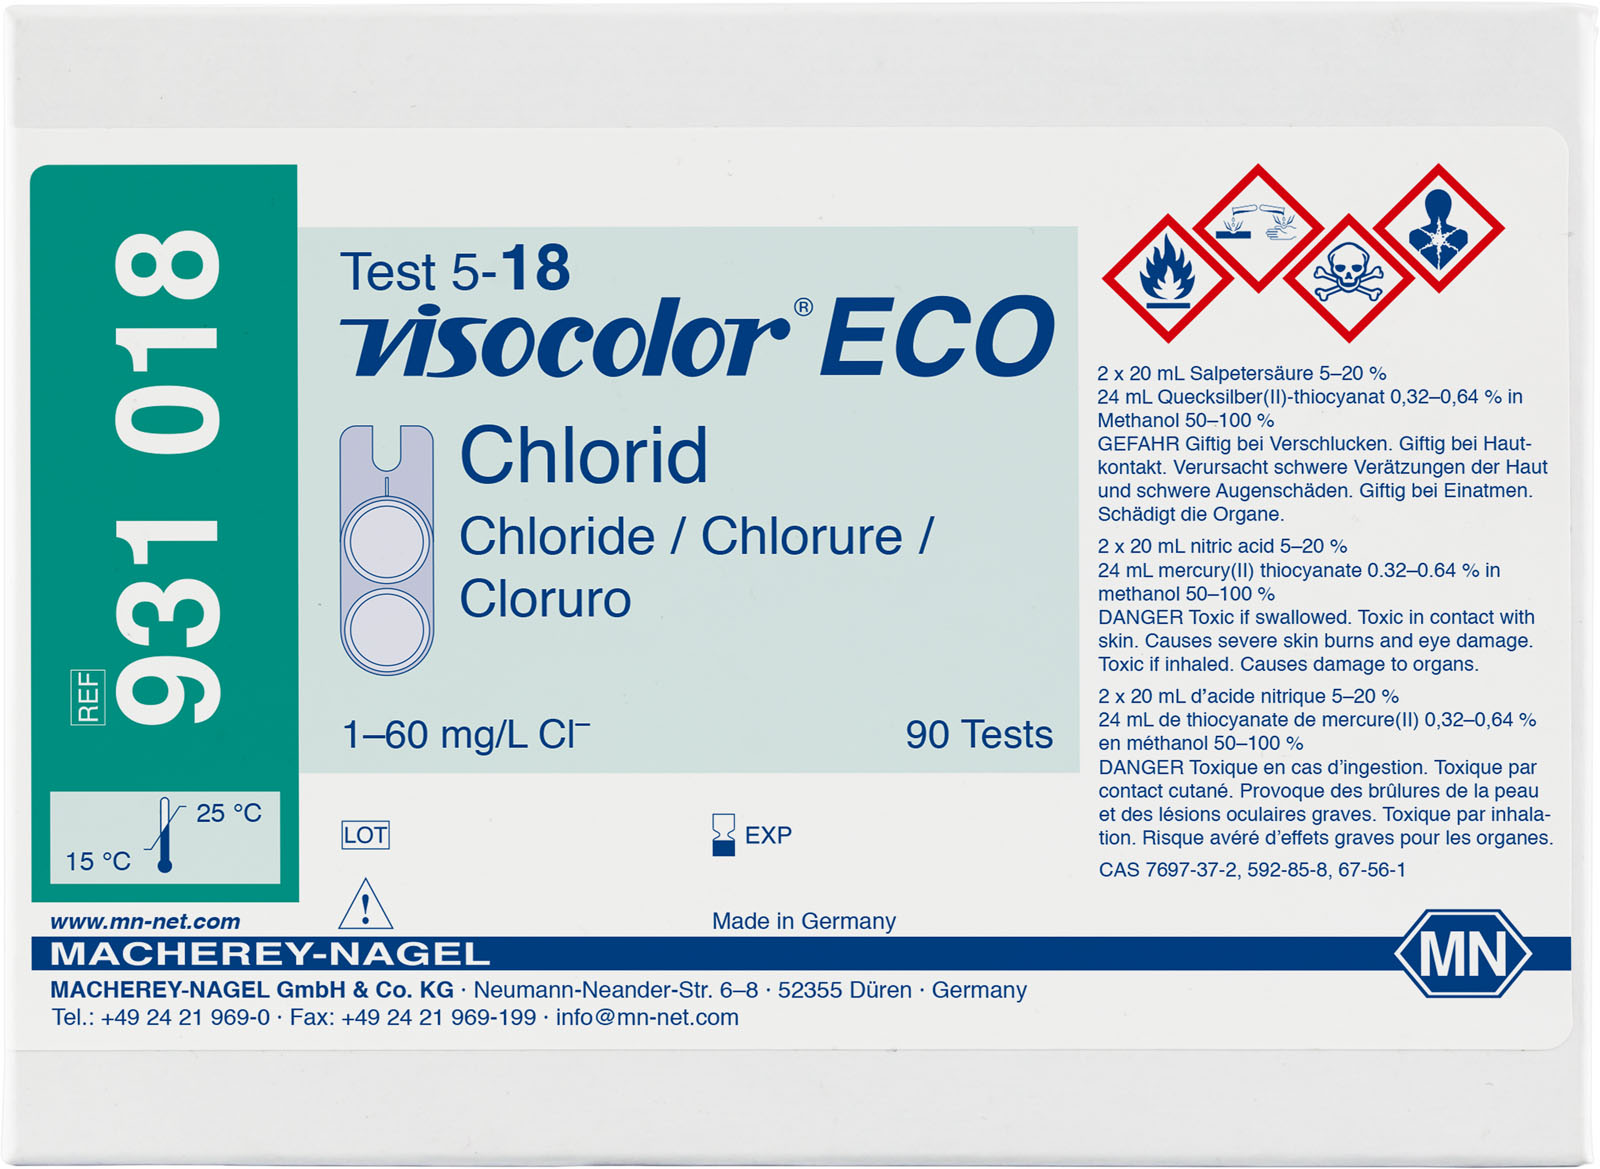 VISOCOLOR® ECO Chloride Test Kit